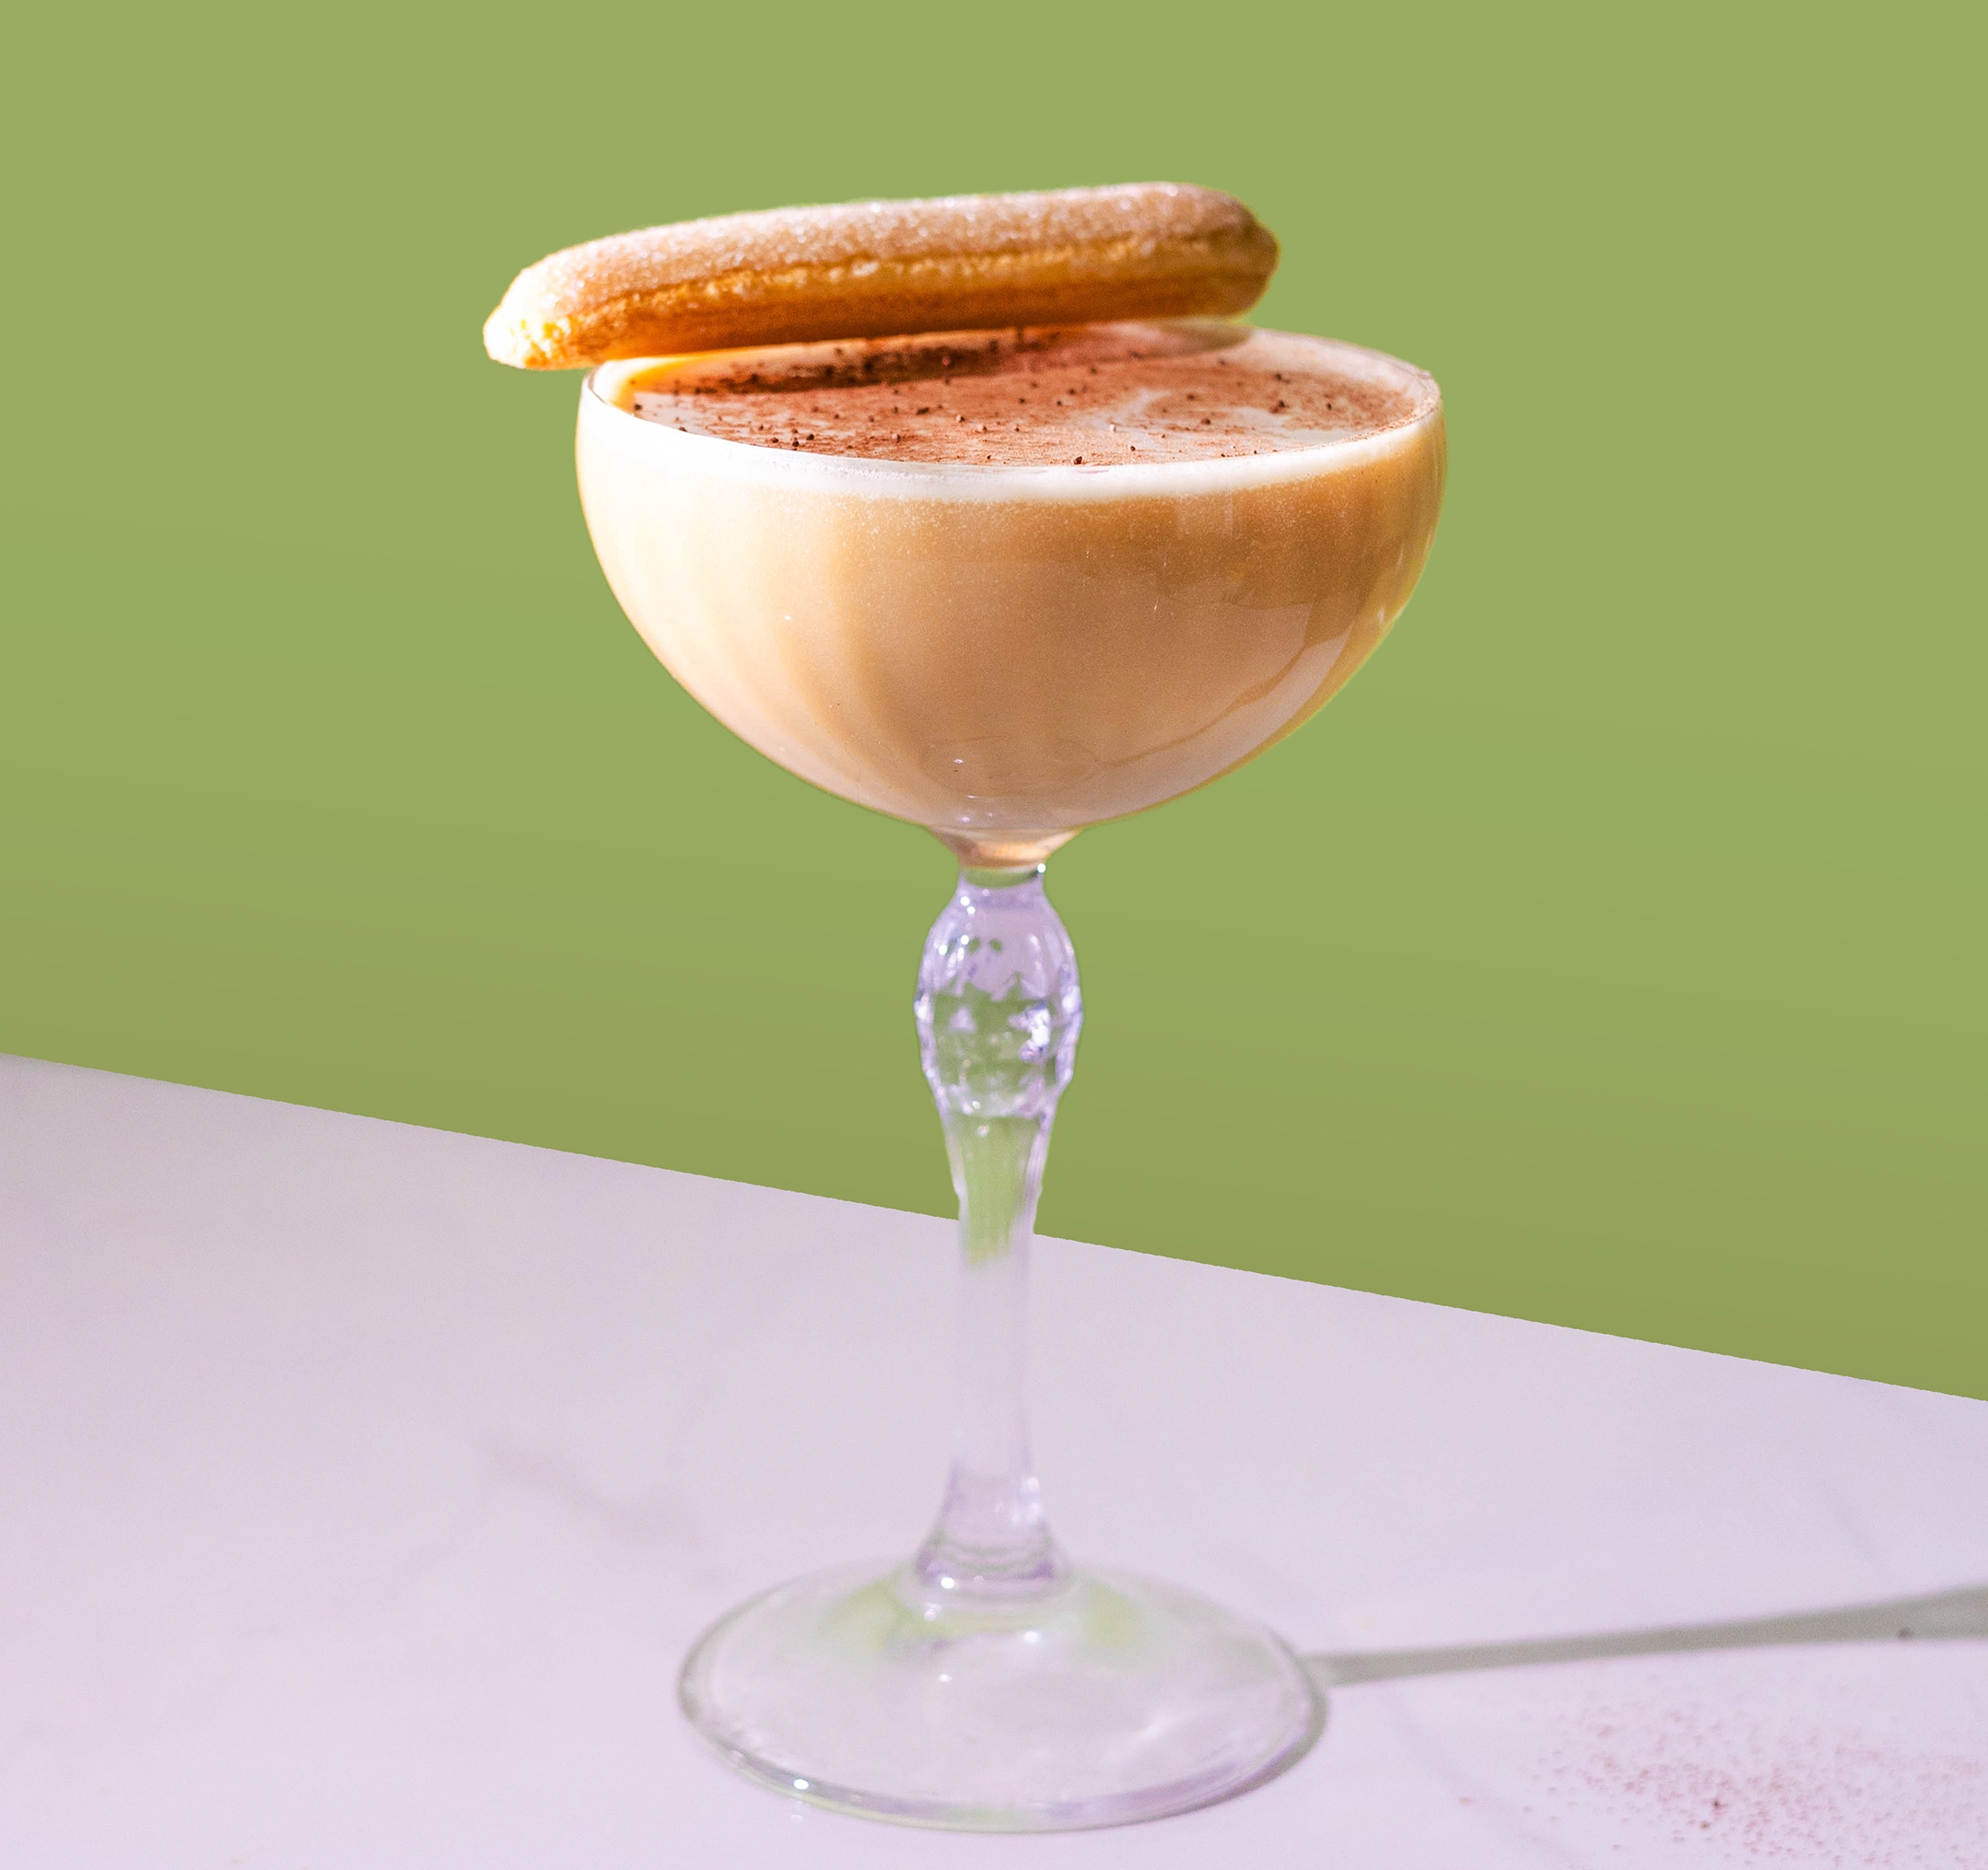 Sirop de caramel salé – Monsieur Cocktail